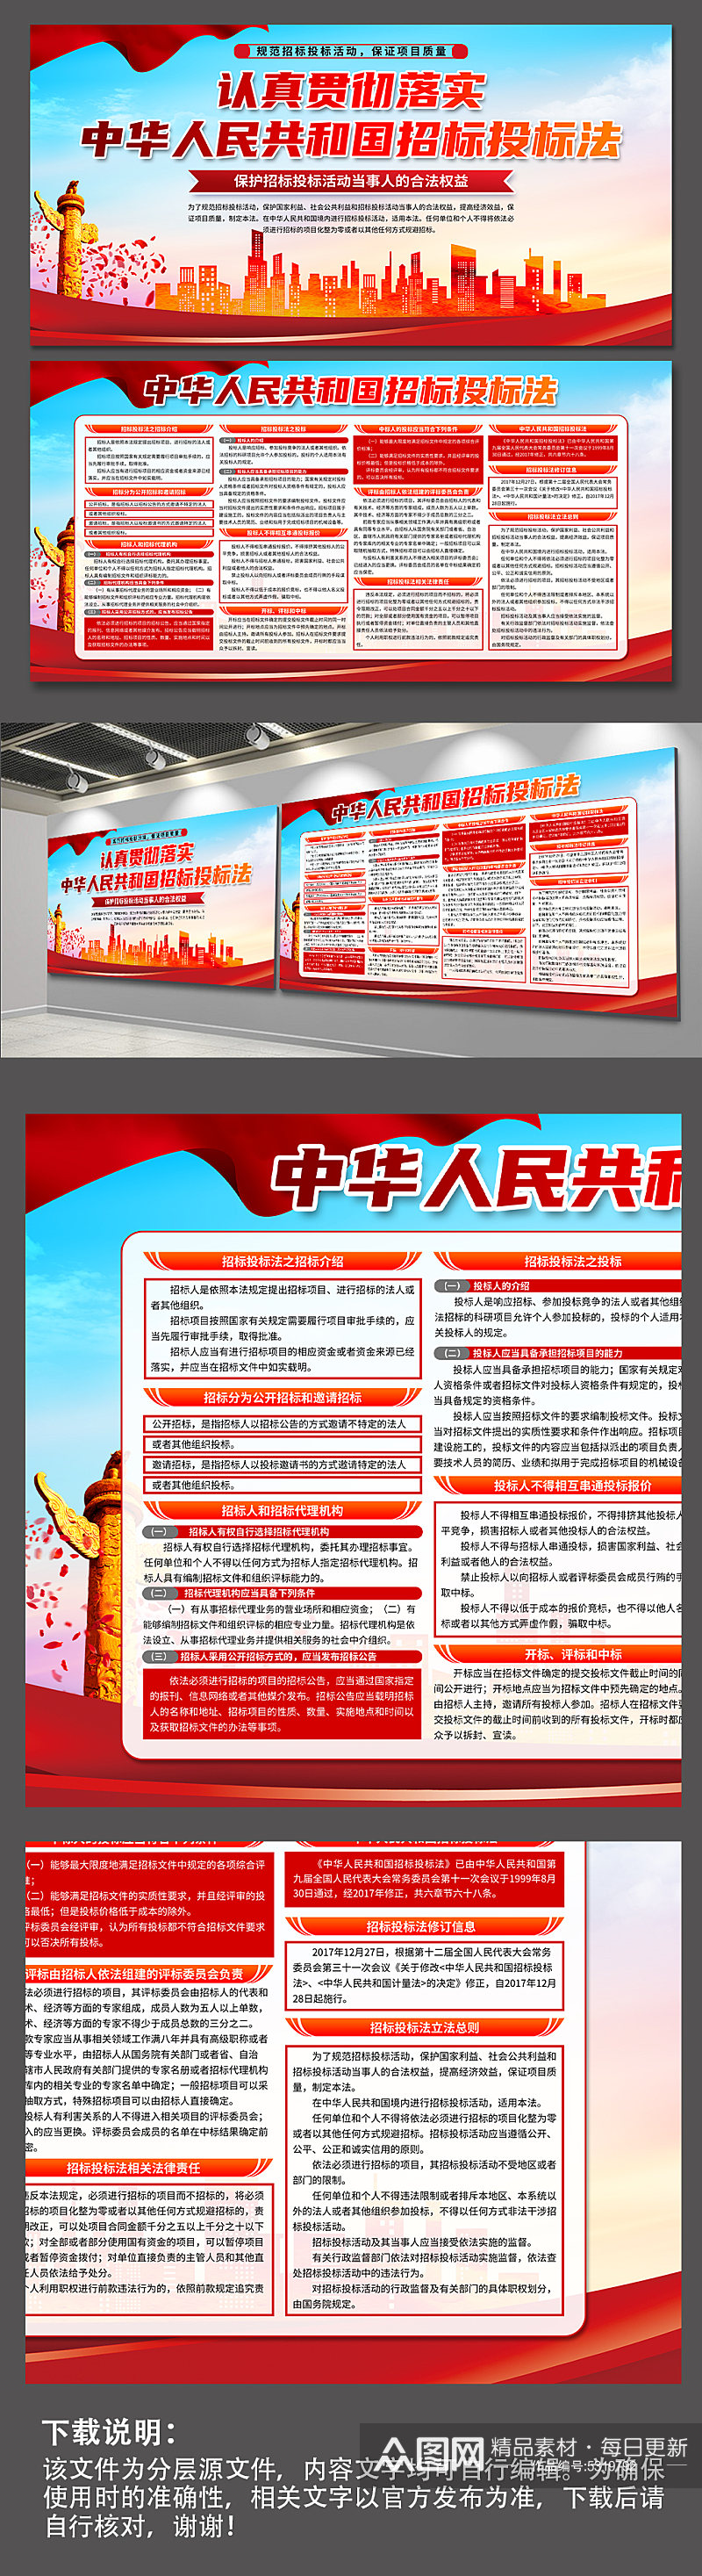 蓝色中华人民共和国招标投标法党建展板素材